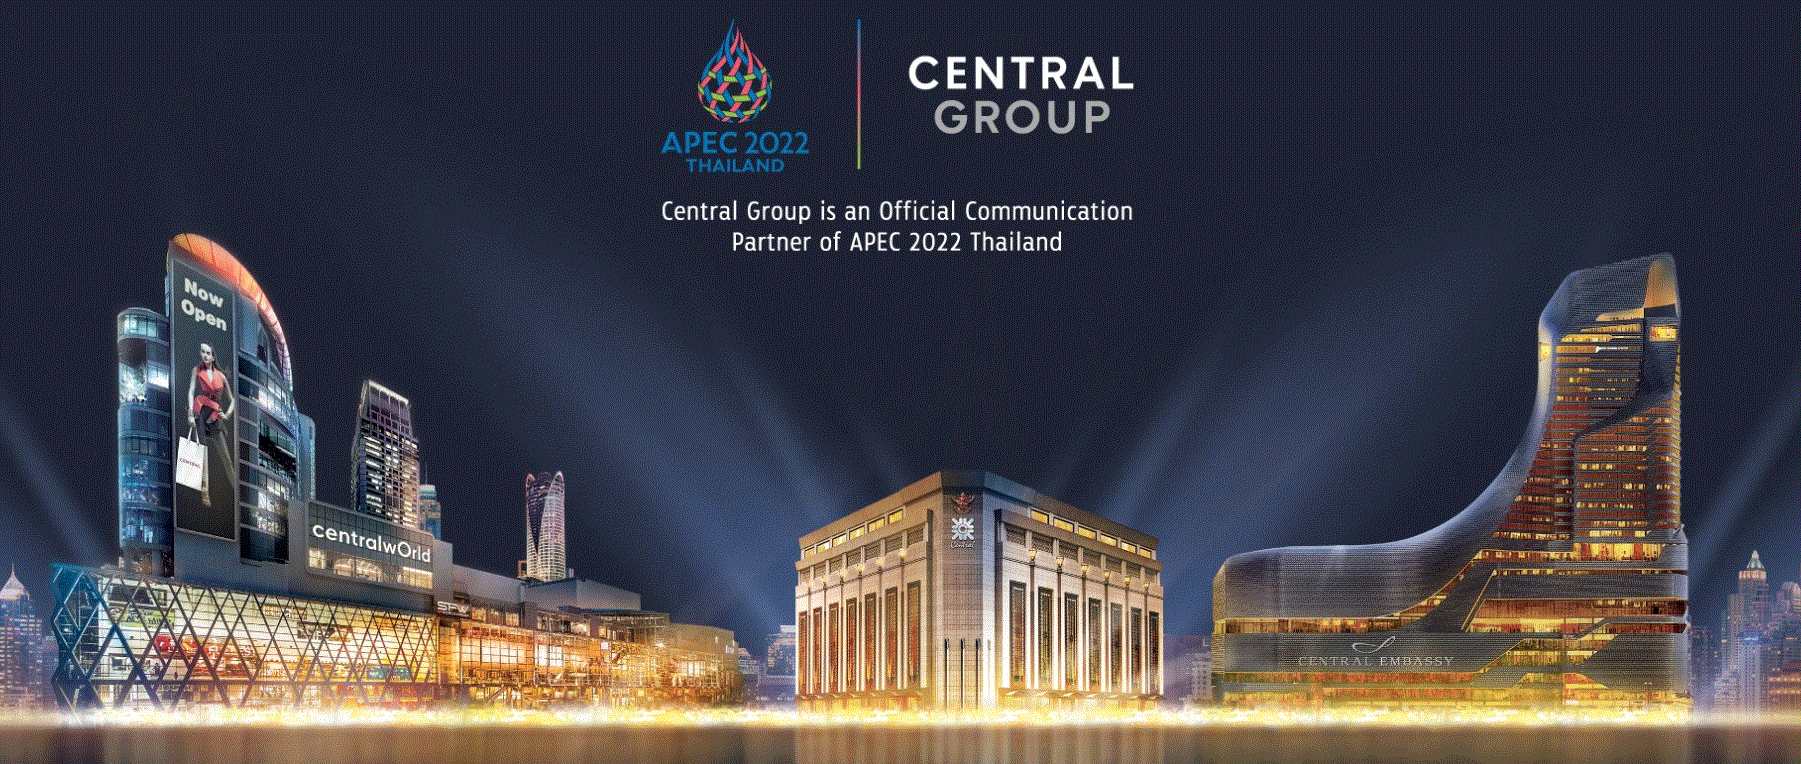 Central Group: 11 năm đưa mảng bán lẻ vào Việt Nam bằng Central Retail, “cánh tay thứ 2” Central Pattana trong BĐS bán lẻ rục rịch chờ công bố mới vào giữa năm - Ảnh 5.